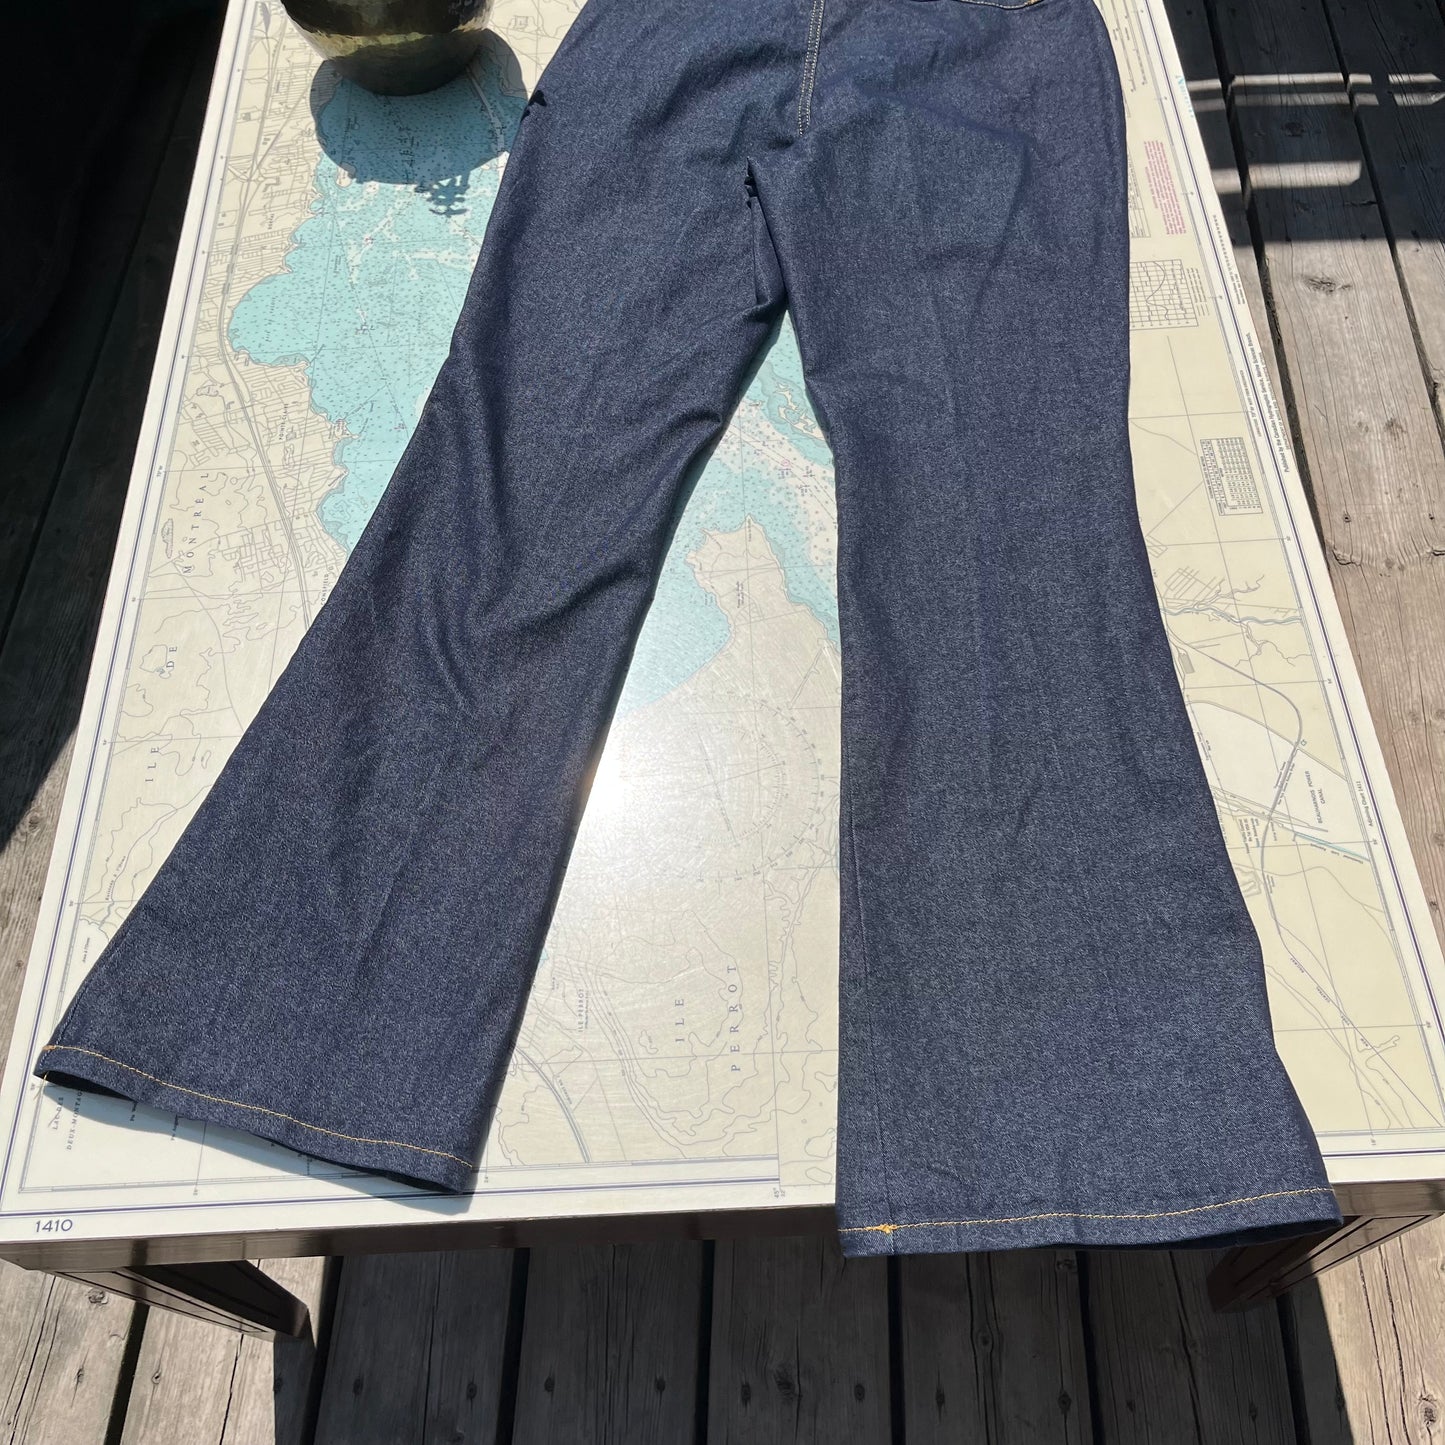 Vintage Y2K Garage Bell Bottom Flared Jeans